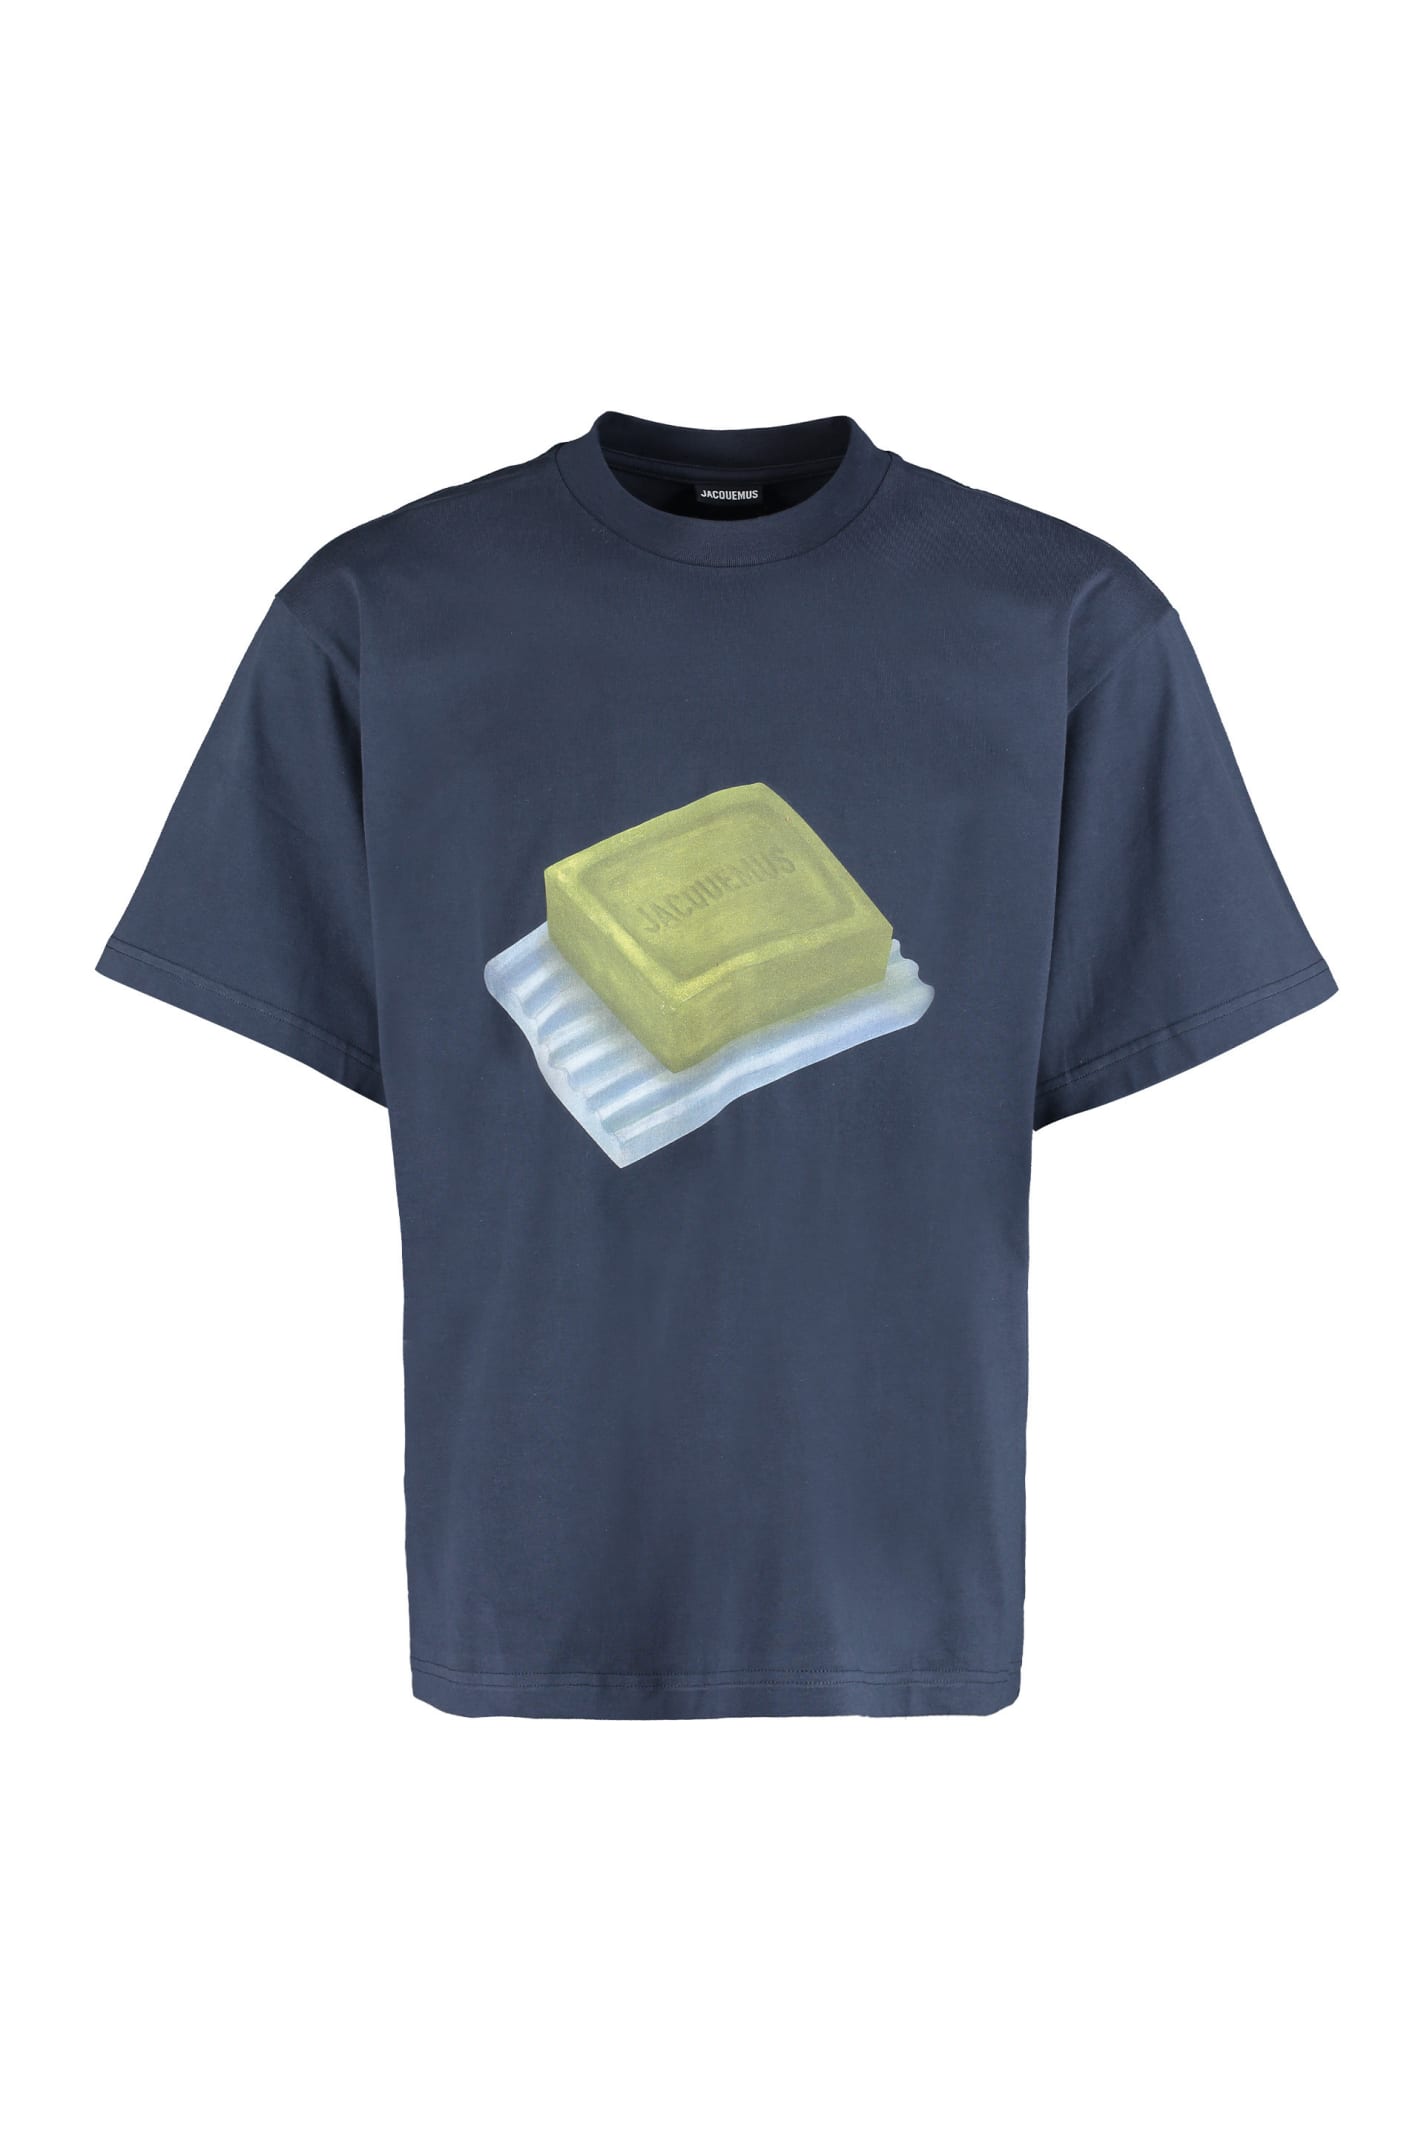 Jacquemus Savon Printed Cotton T-shirt